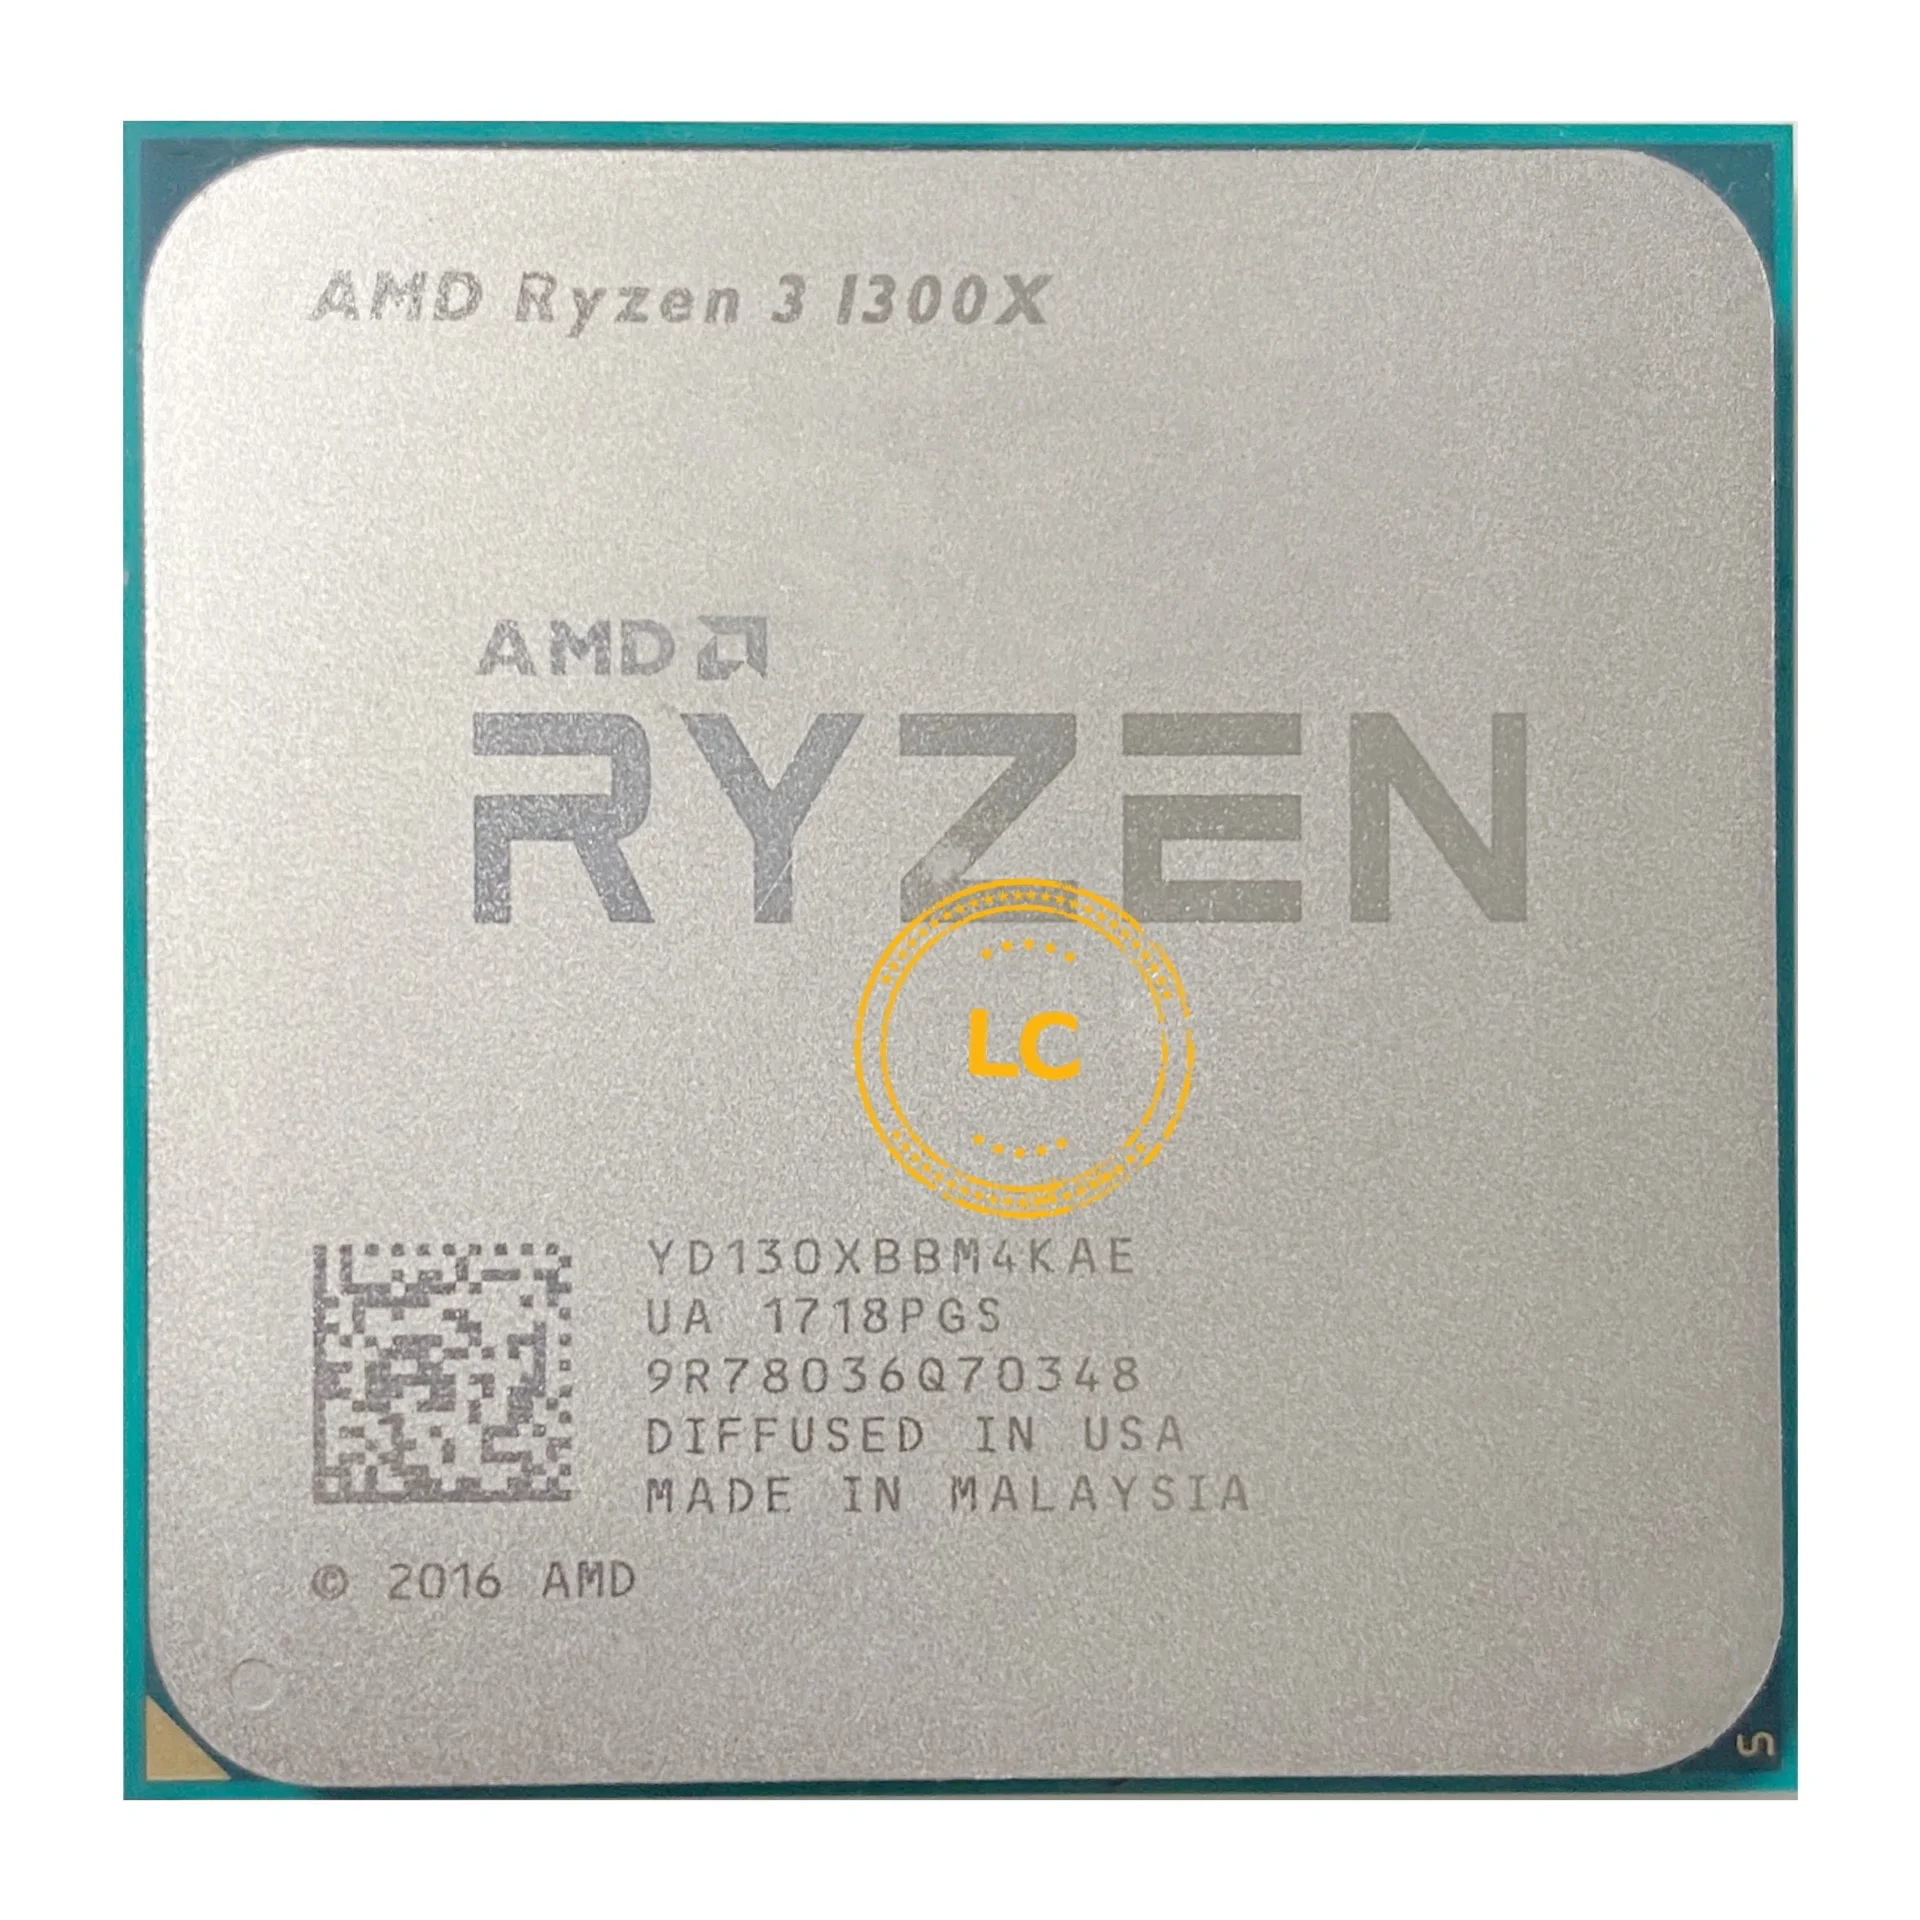 Ryzen 3 pro 1300. AMD Ryzen 3 1200 Quad-Core Processor 3.10 GHZ. AMD Ryzen 3 Pro 1300 Quad-Core Processor 3.50 GHZ. AMD a10-6700 APU. Ryzen 3 1300x.